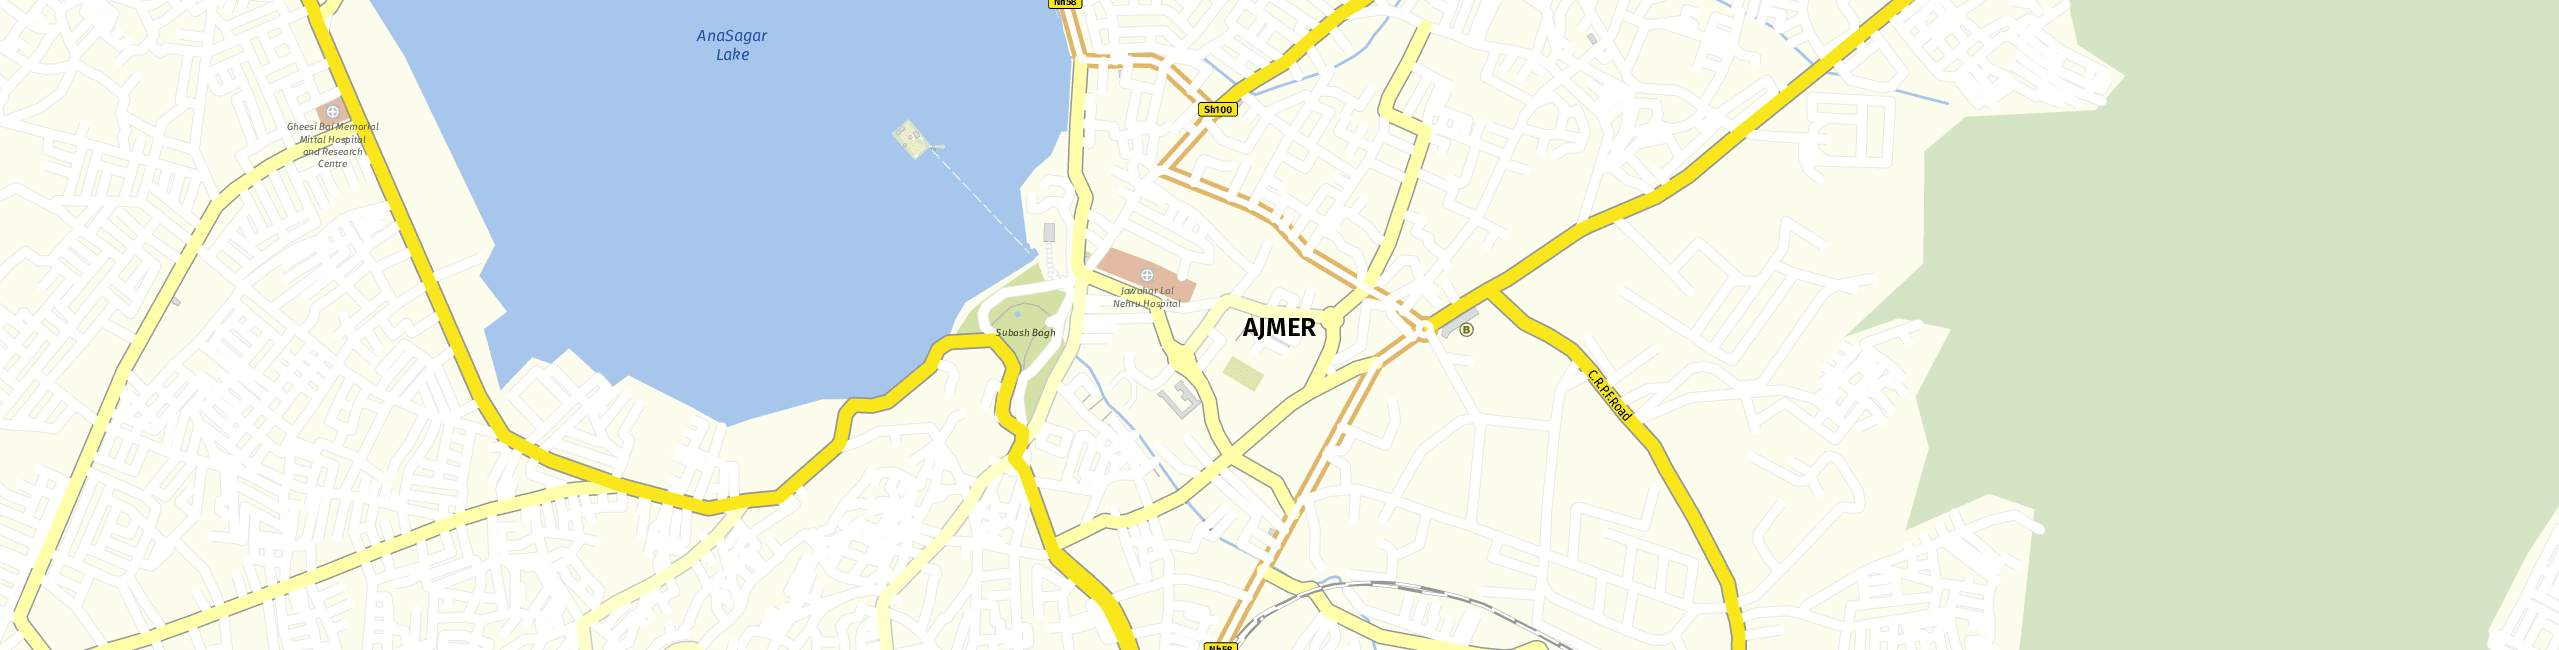 Stadtplan Ajmer zum Downloaden.